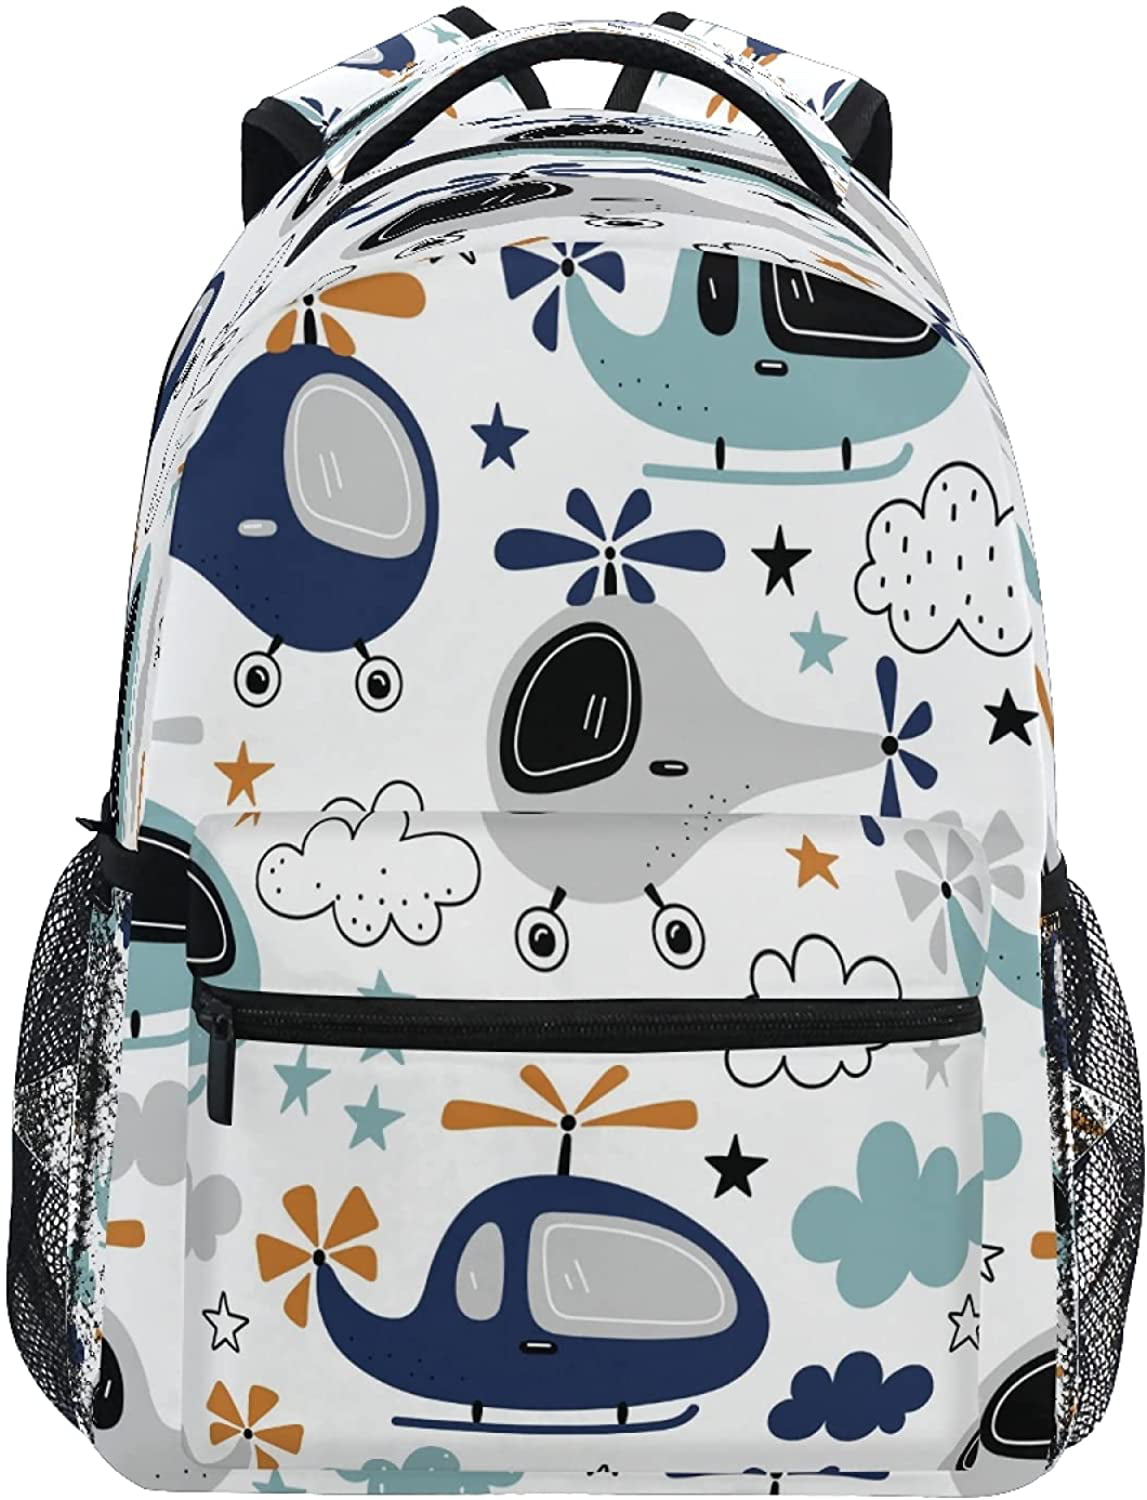 Travel Laptop Backpack Boy Girl Kids School Bag Bookbag 